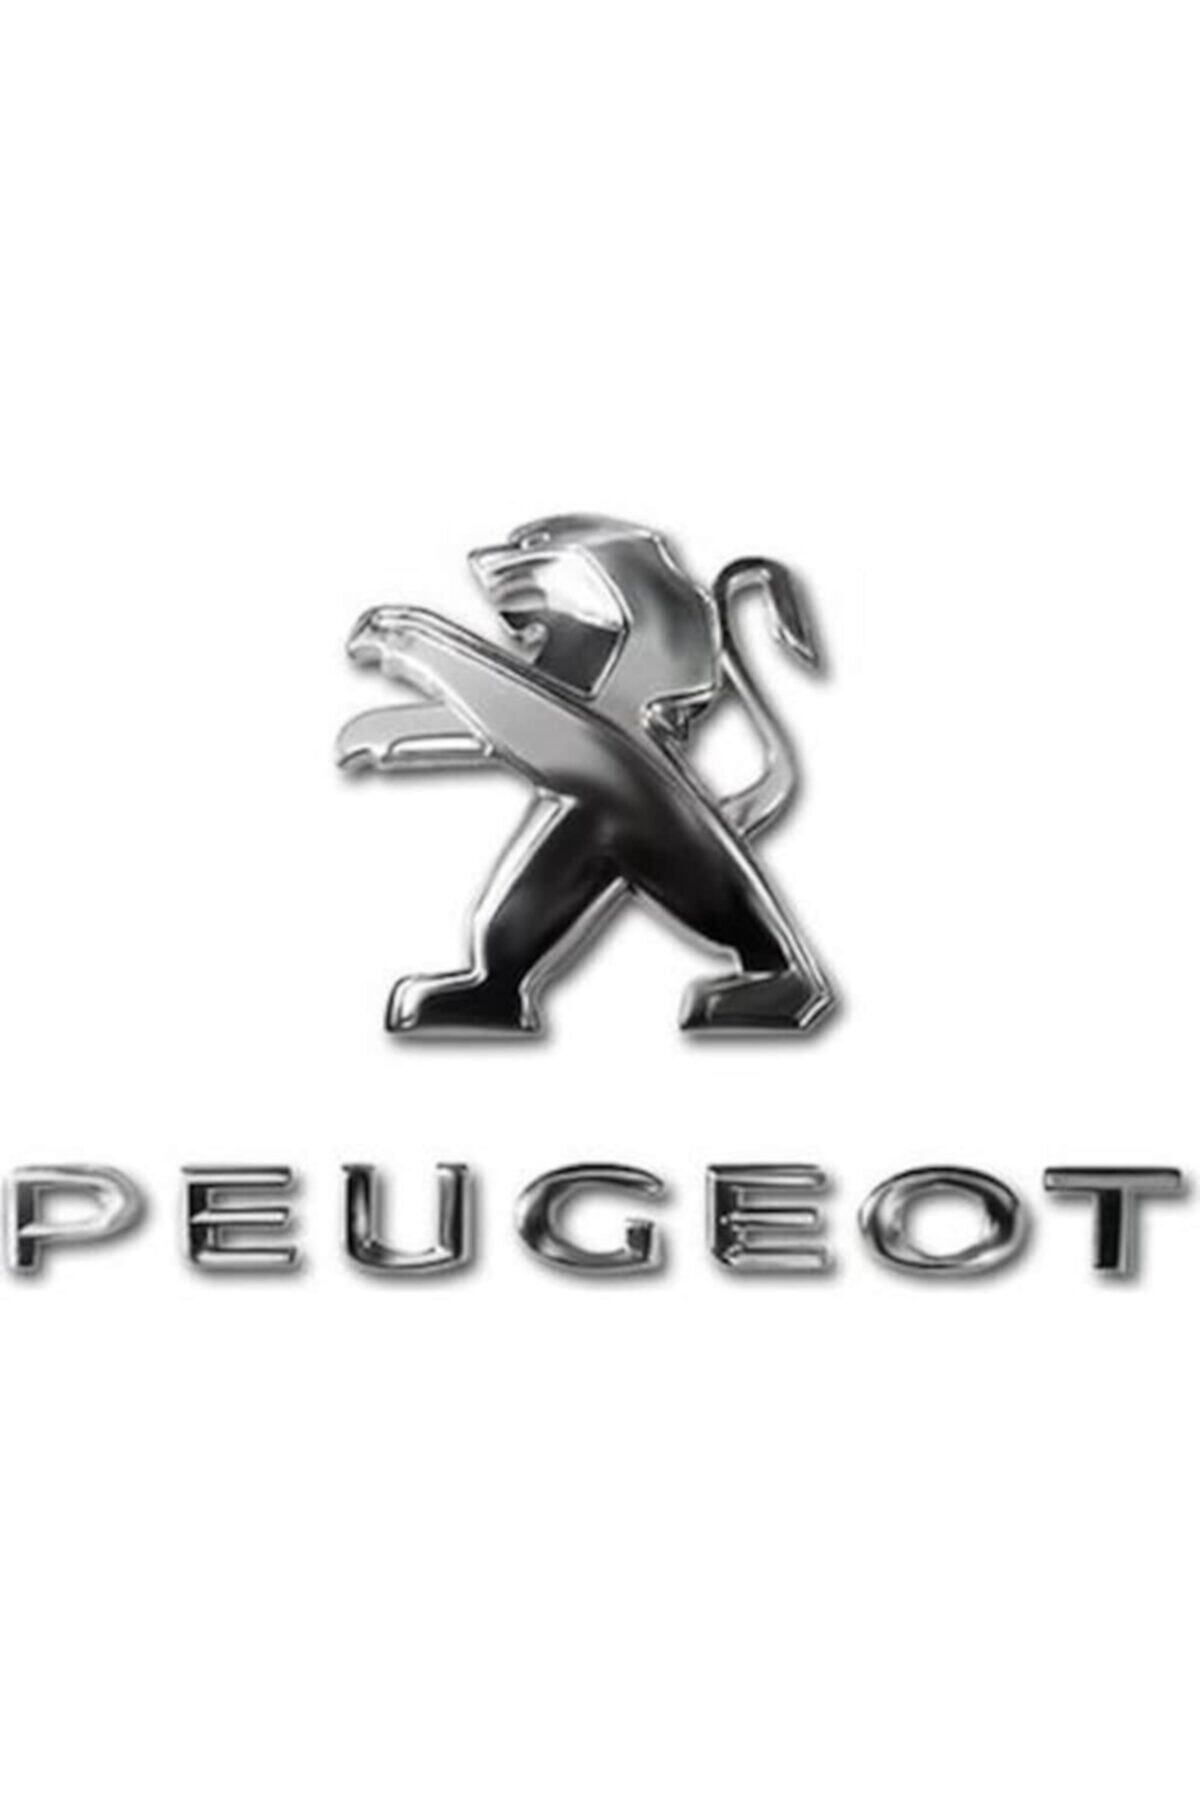 EDEXPORT Peugeot 301 Aslan Arma Ve Peugeot Yazısı Seti -2 Li